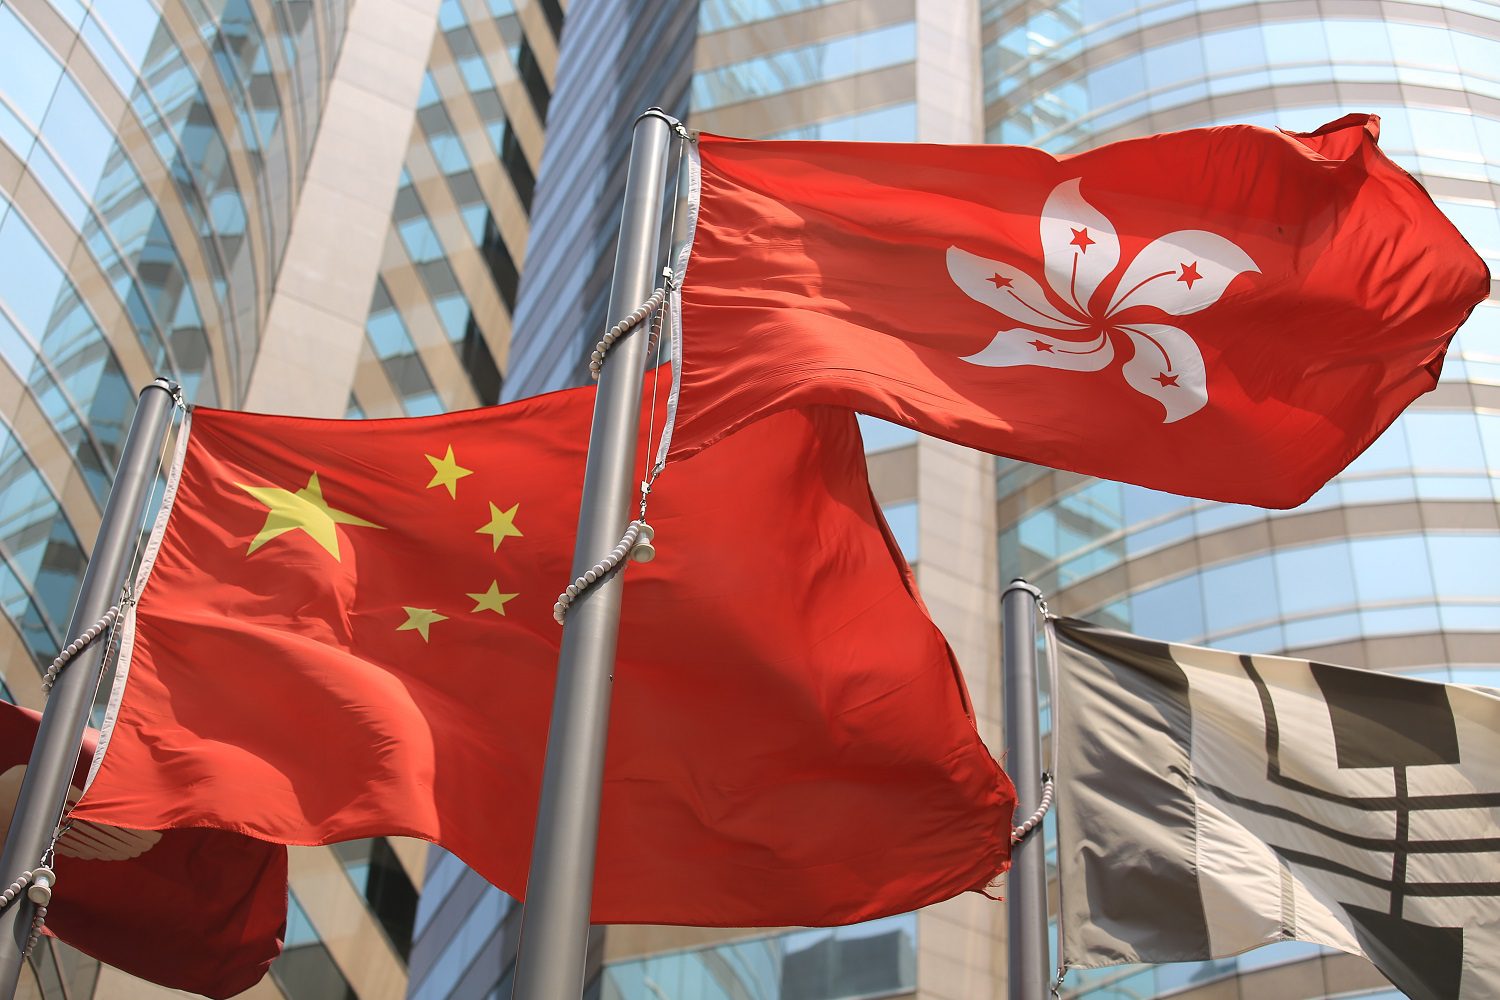 Las banderas de China y Hong Kong, izadas en astas y ondeando al viento.